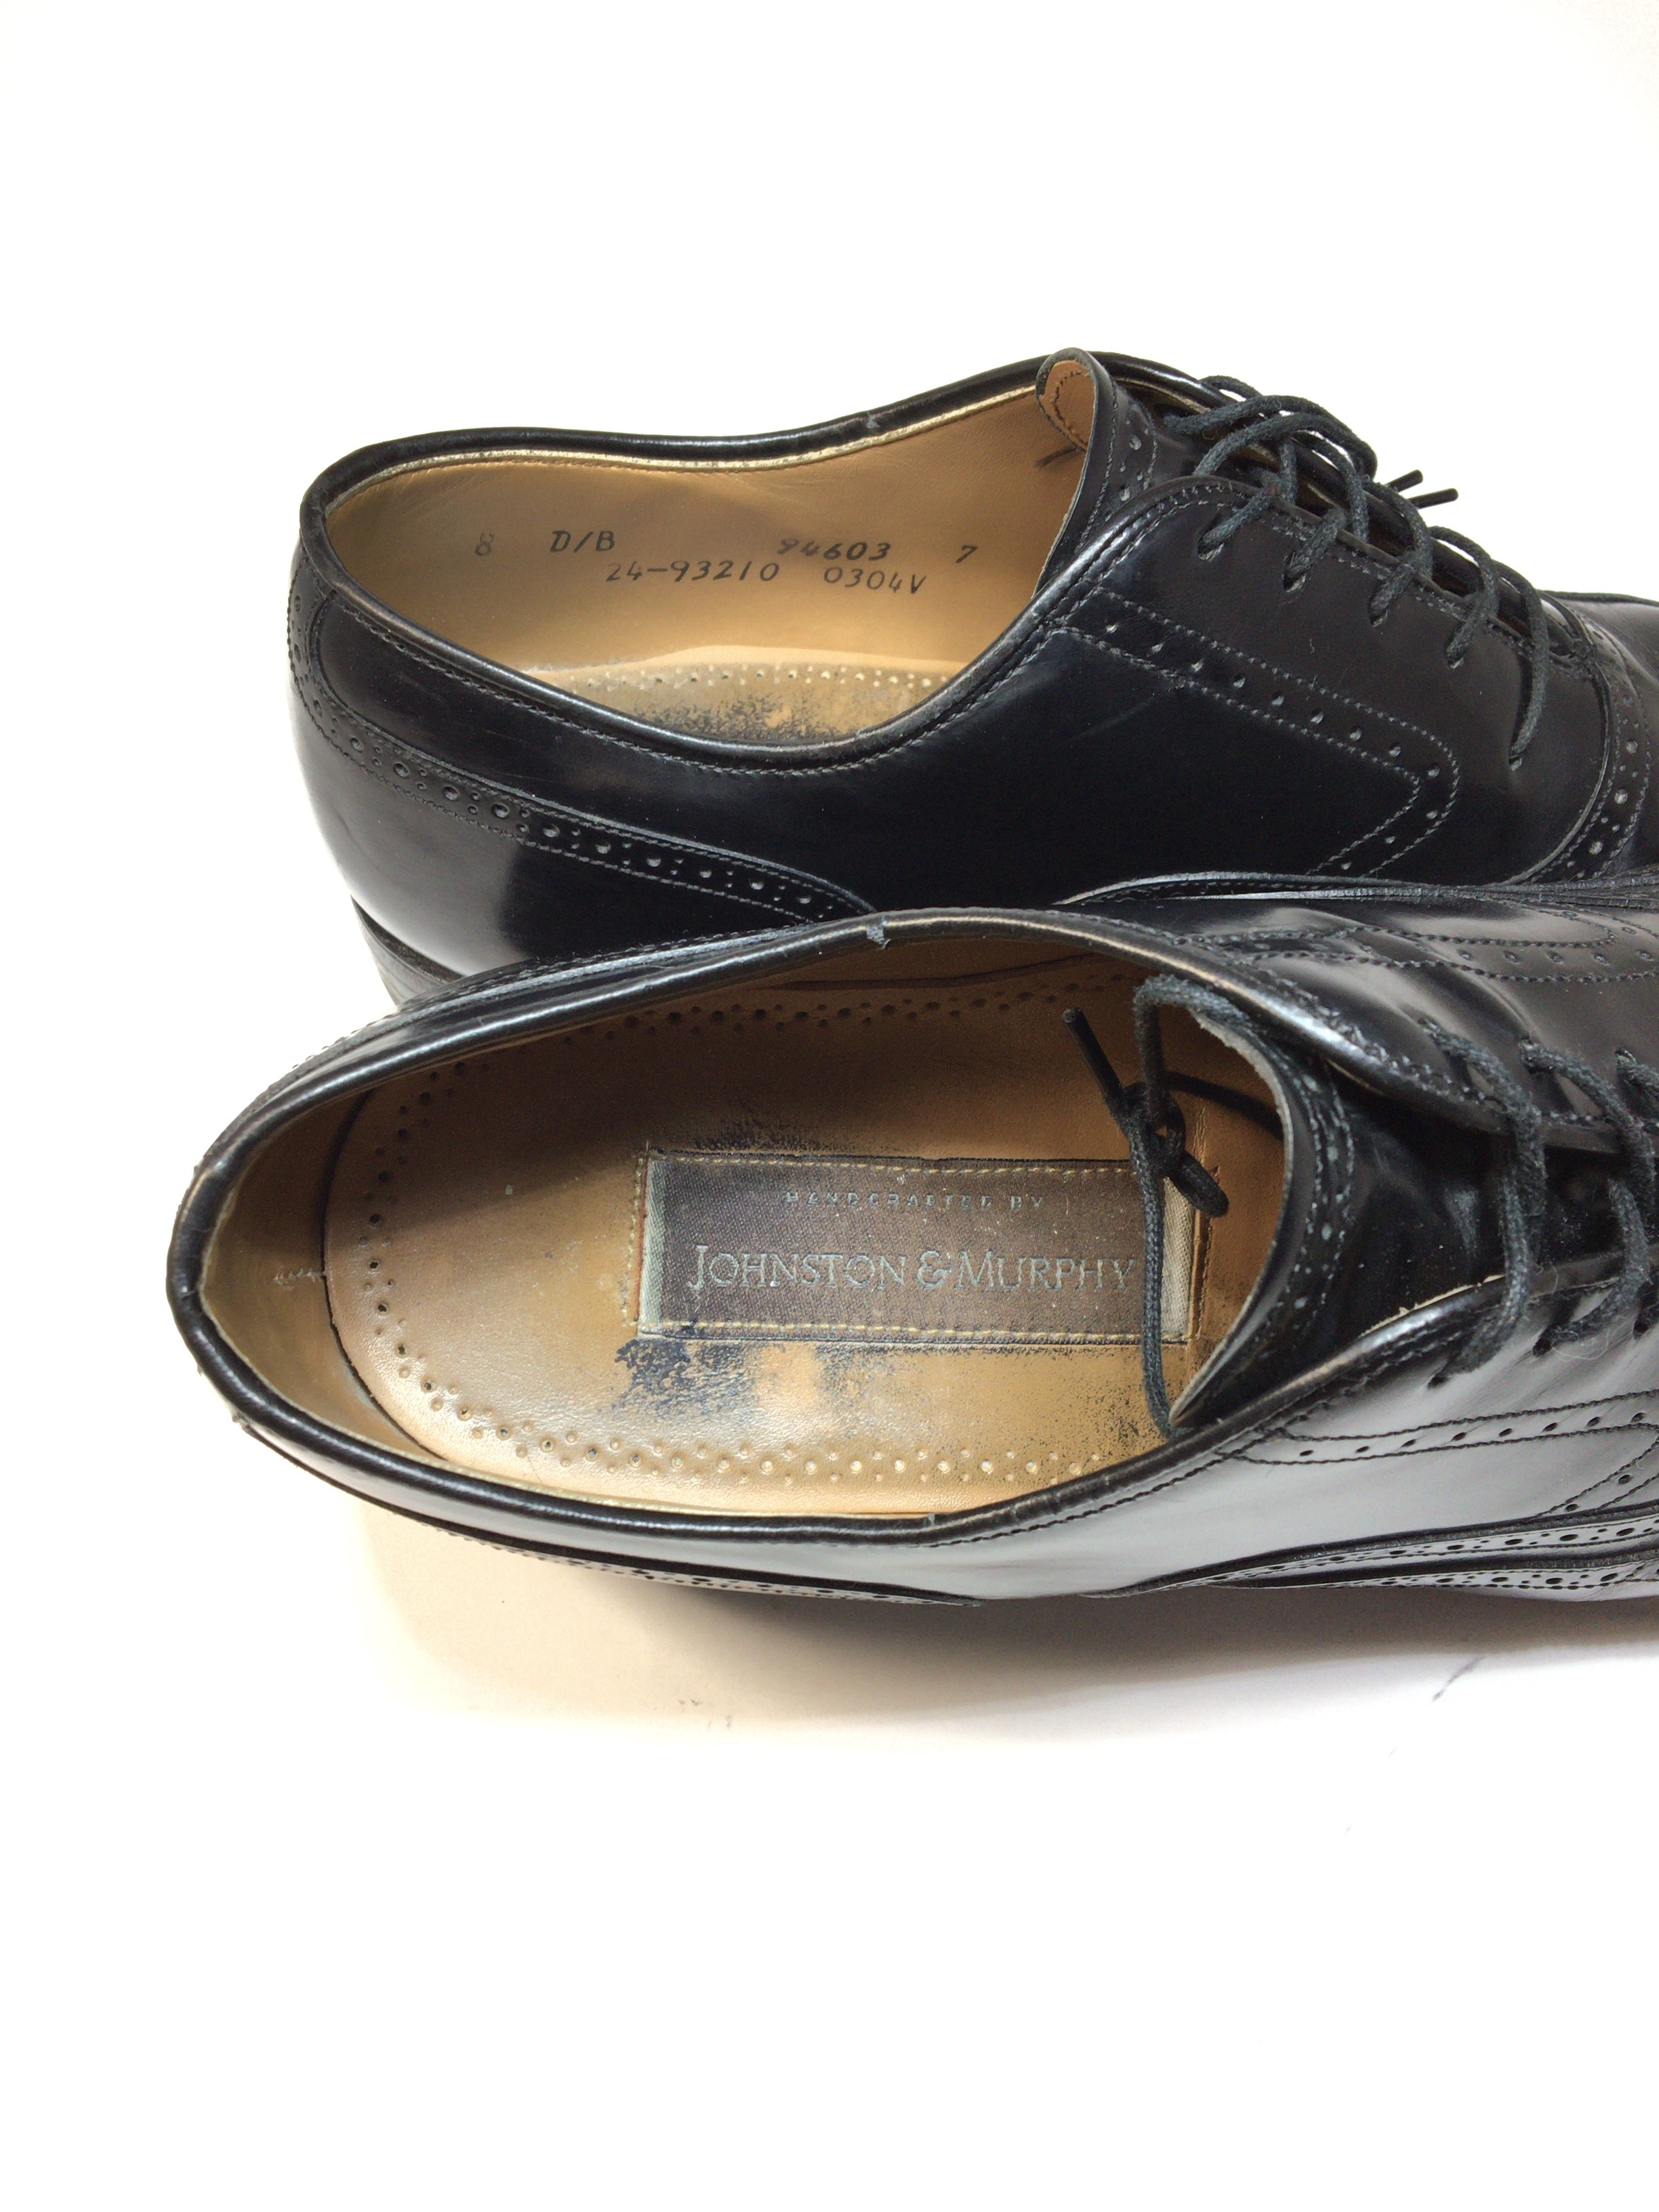 ジョンストンアンドマーフィー JOHNSTON&MURPHY ウイングチップ 26センチ | 中古靴・革靴・ブーツ通販専門店 DafsMart